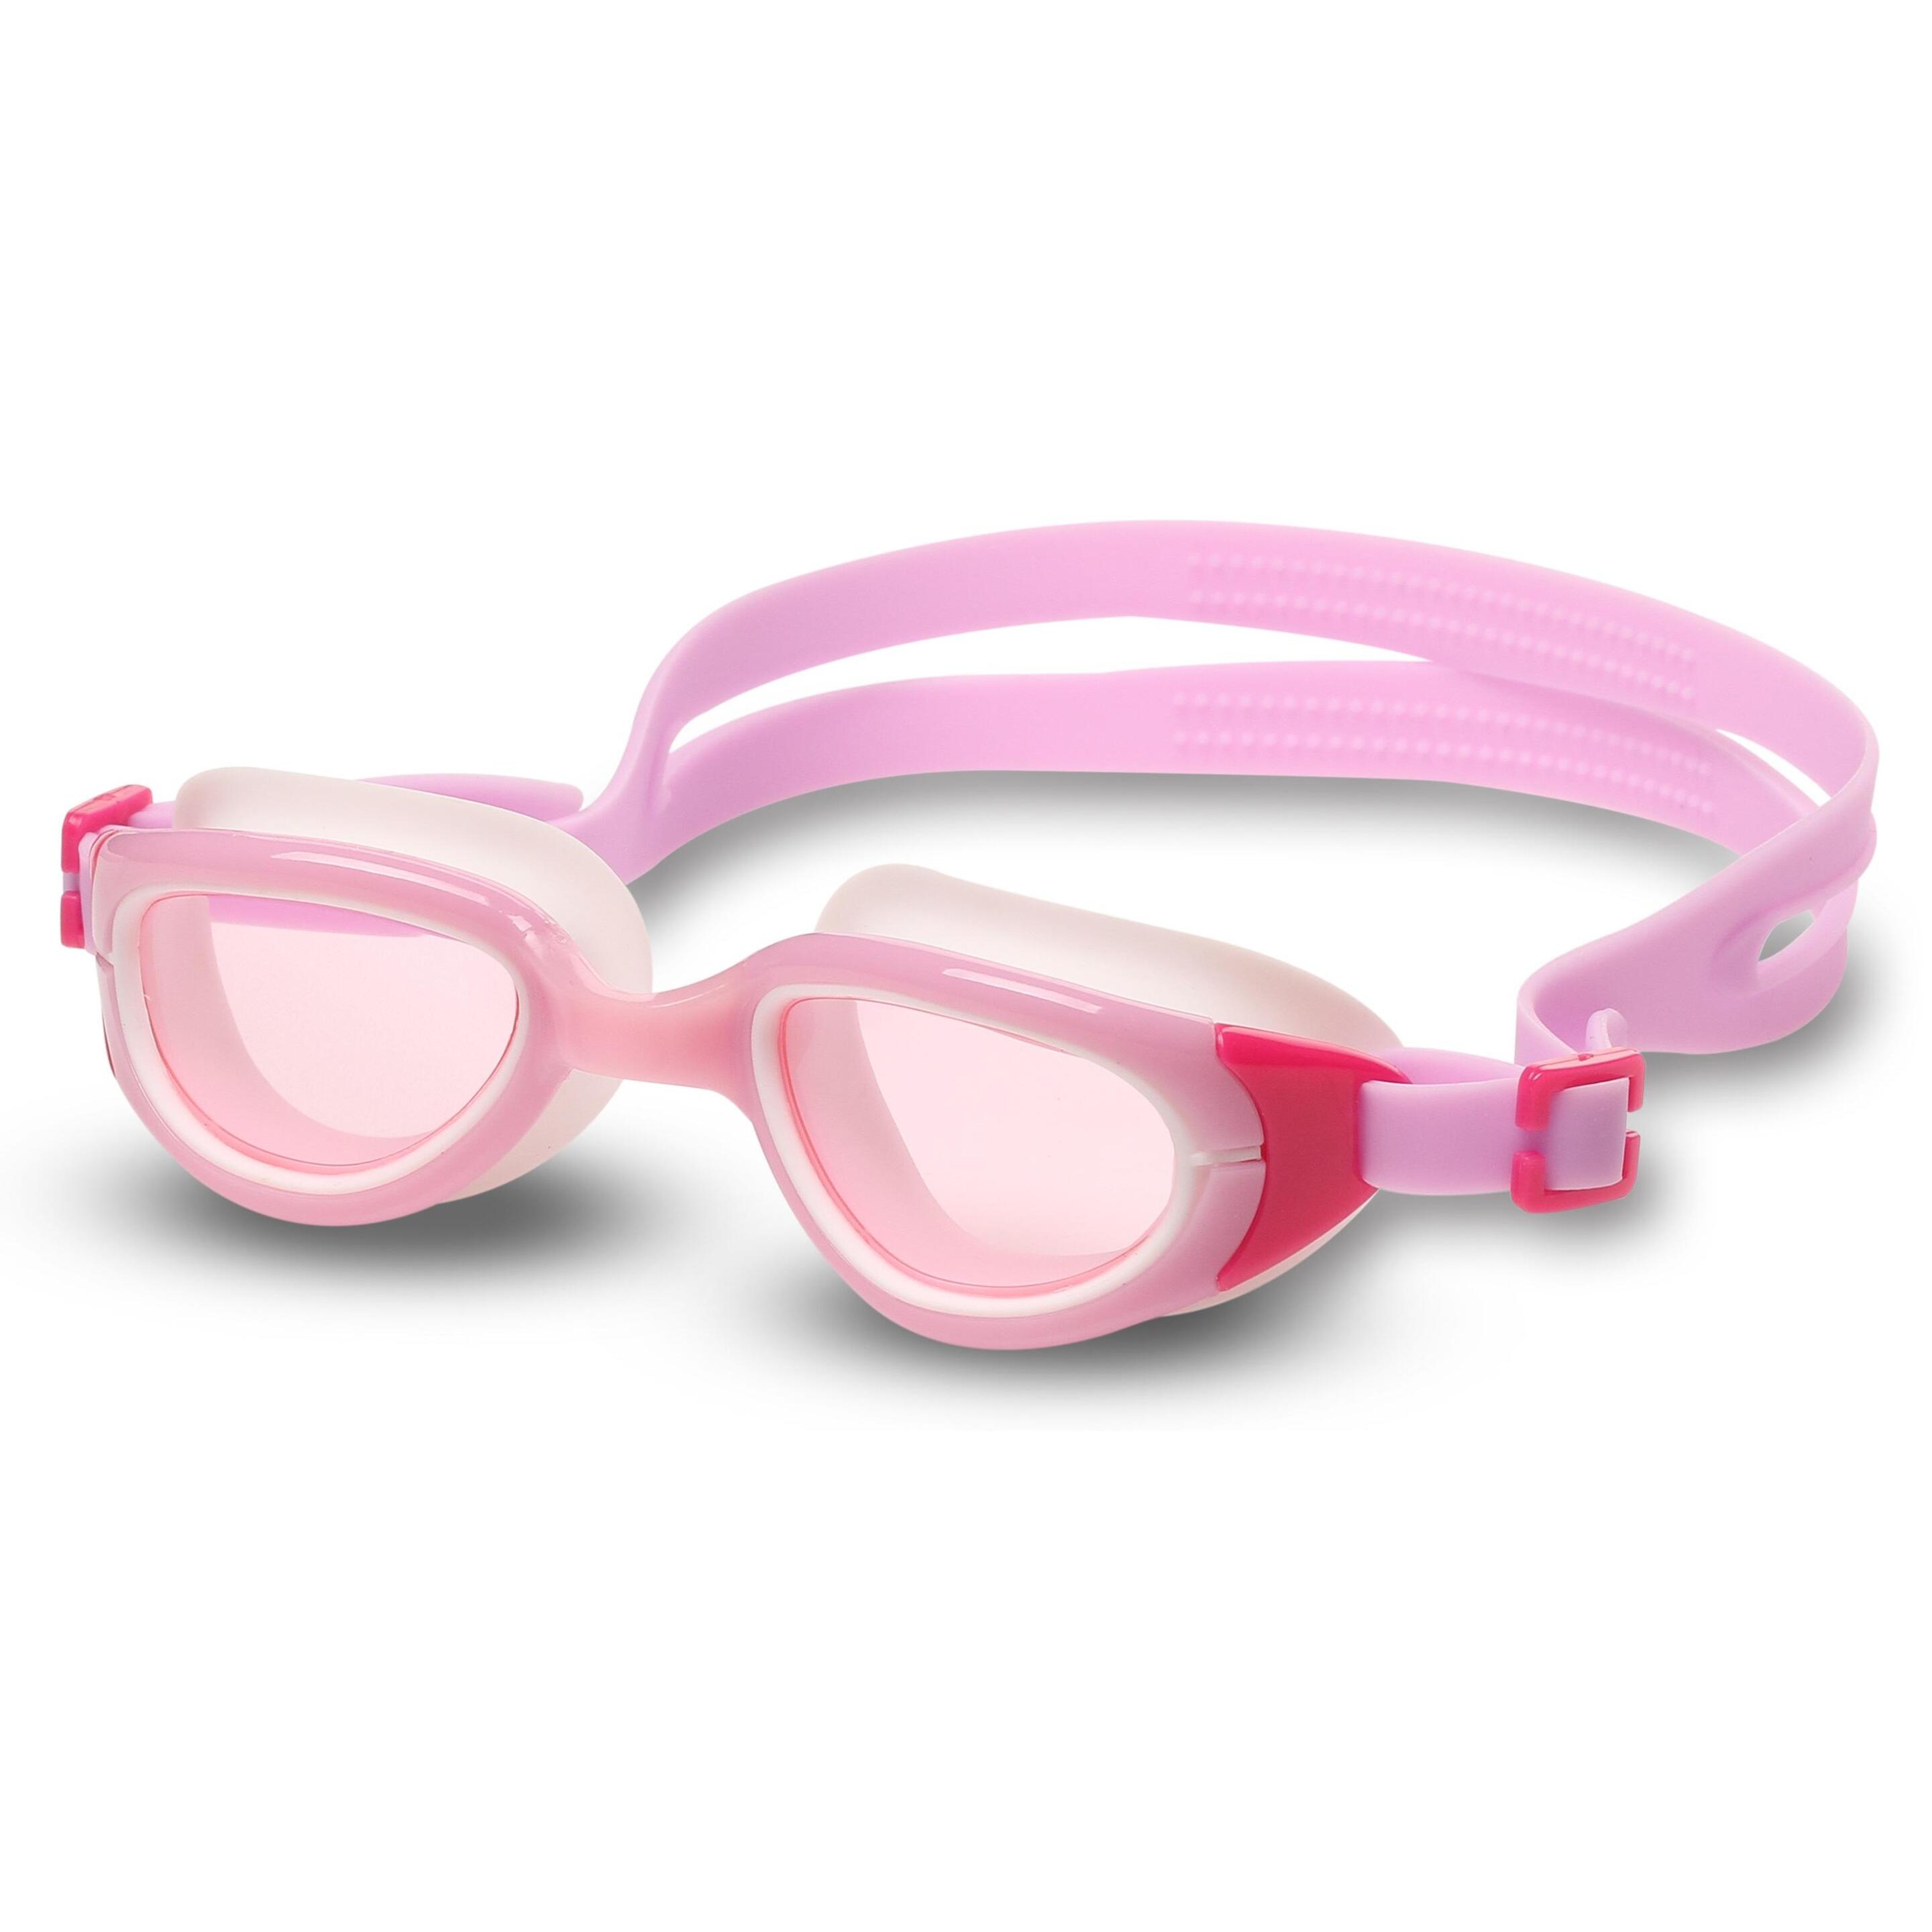 Gafas De Natación Indigo Berry Infantiles - rosa - 